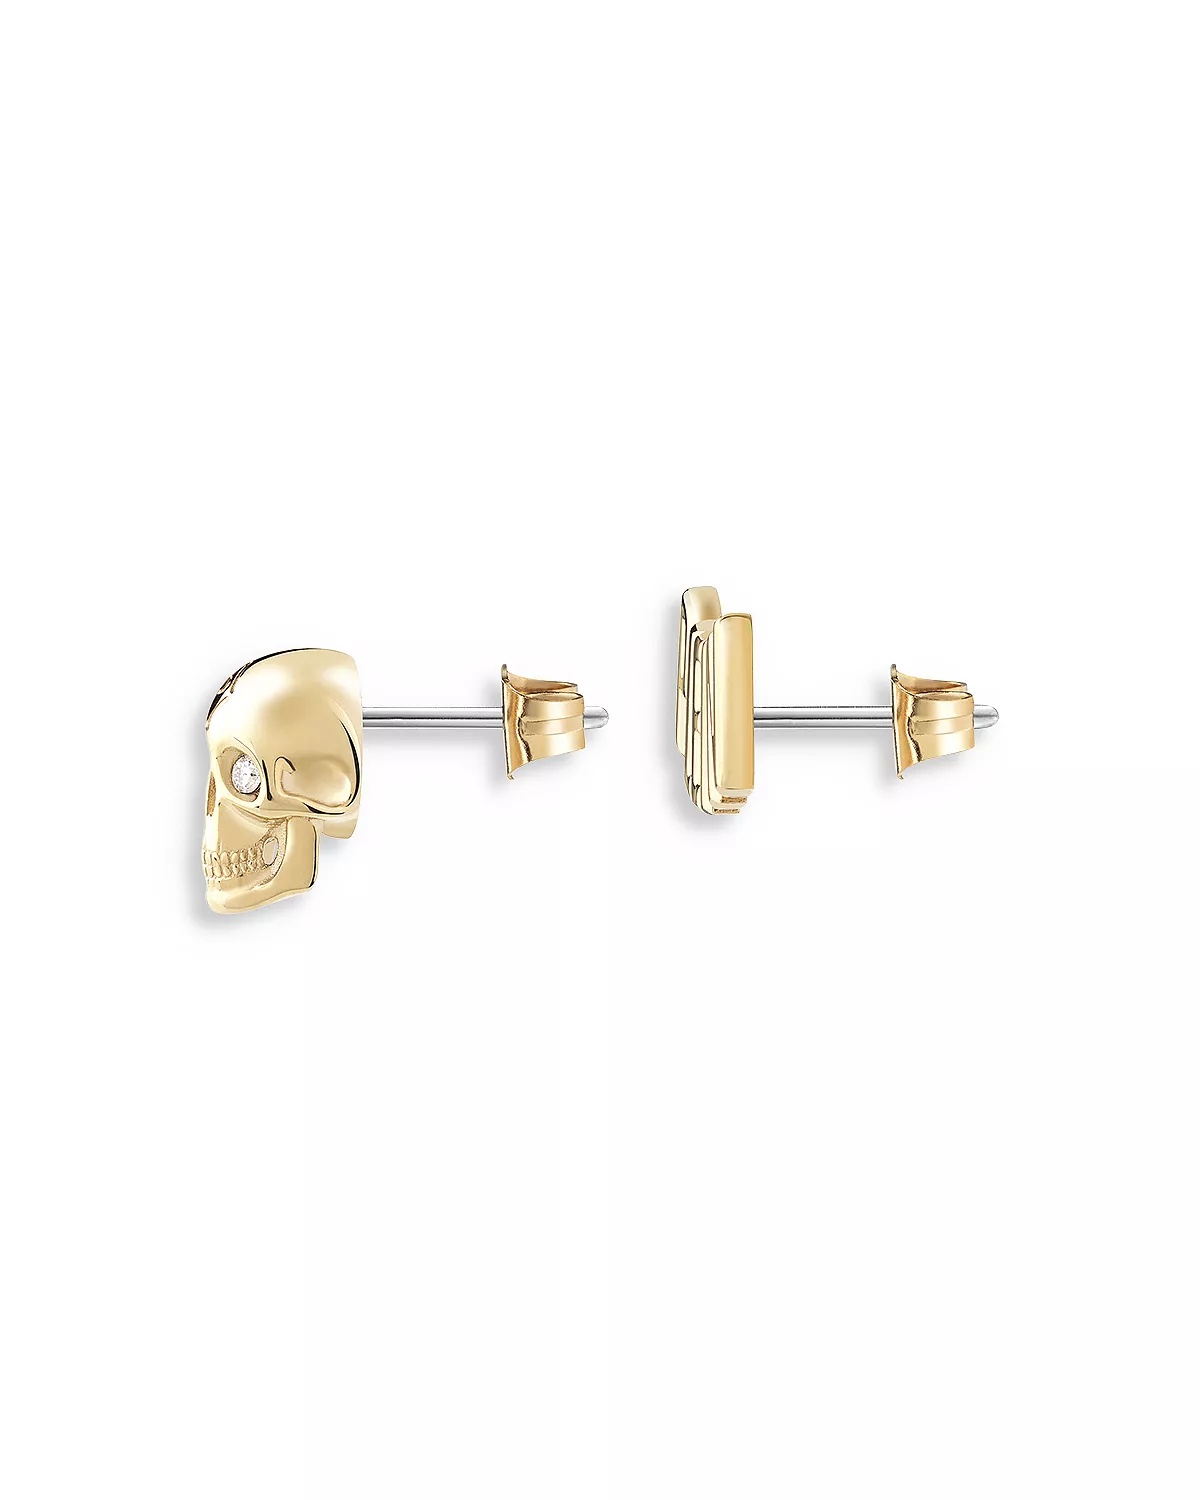 Lettering Gold Tone Stud Earrings, 0.3"W - 5